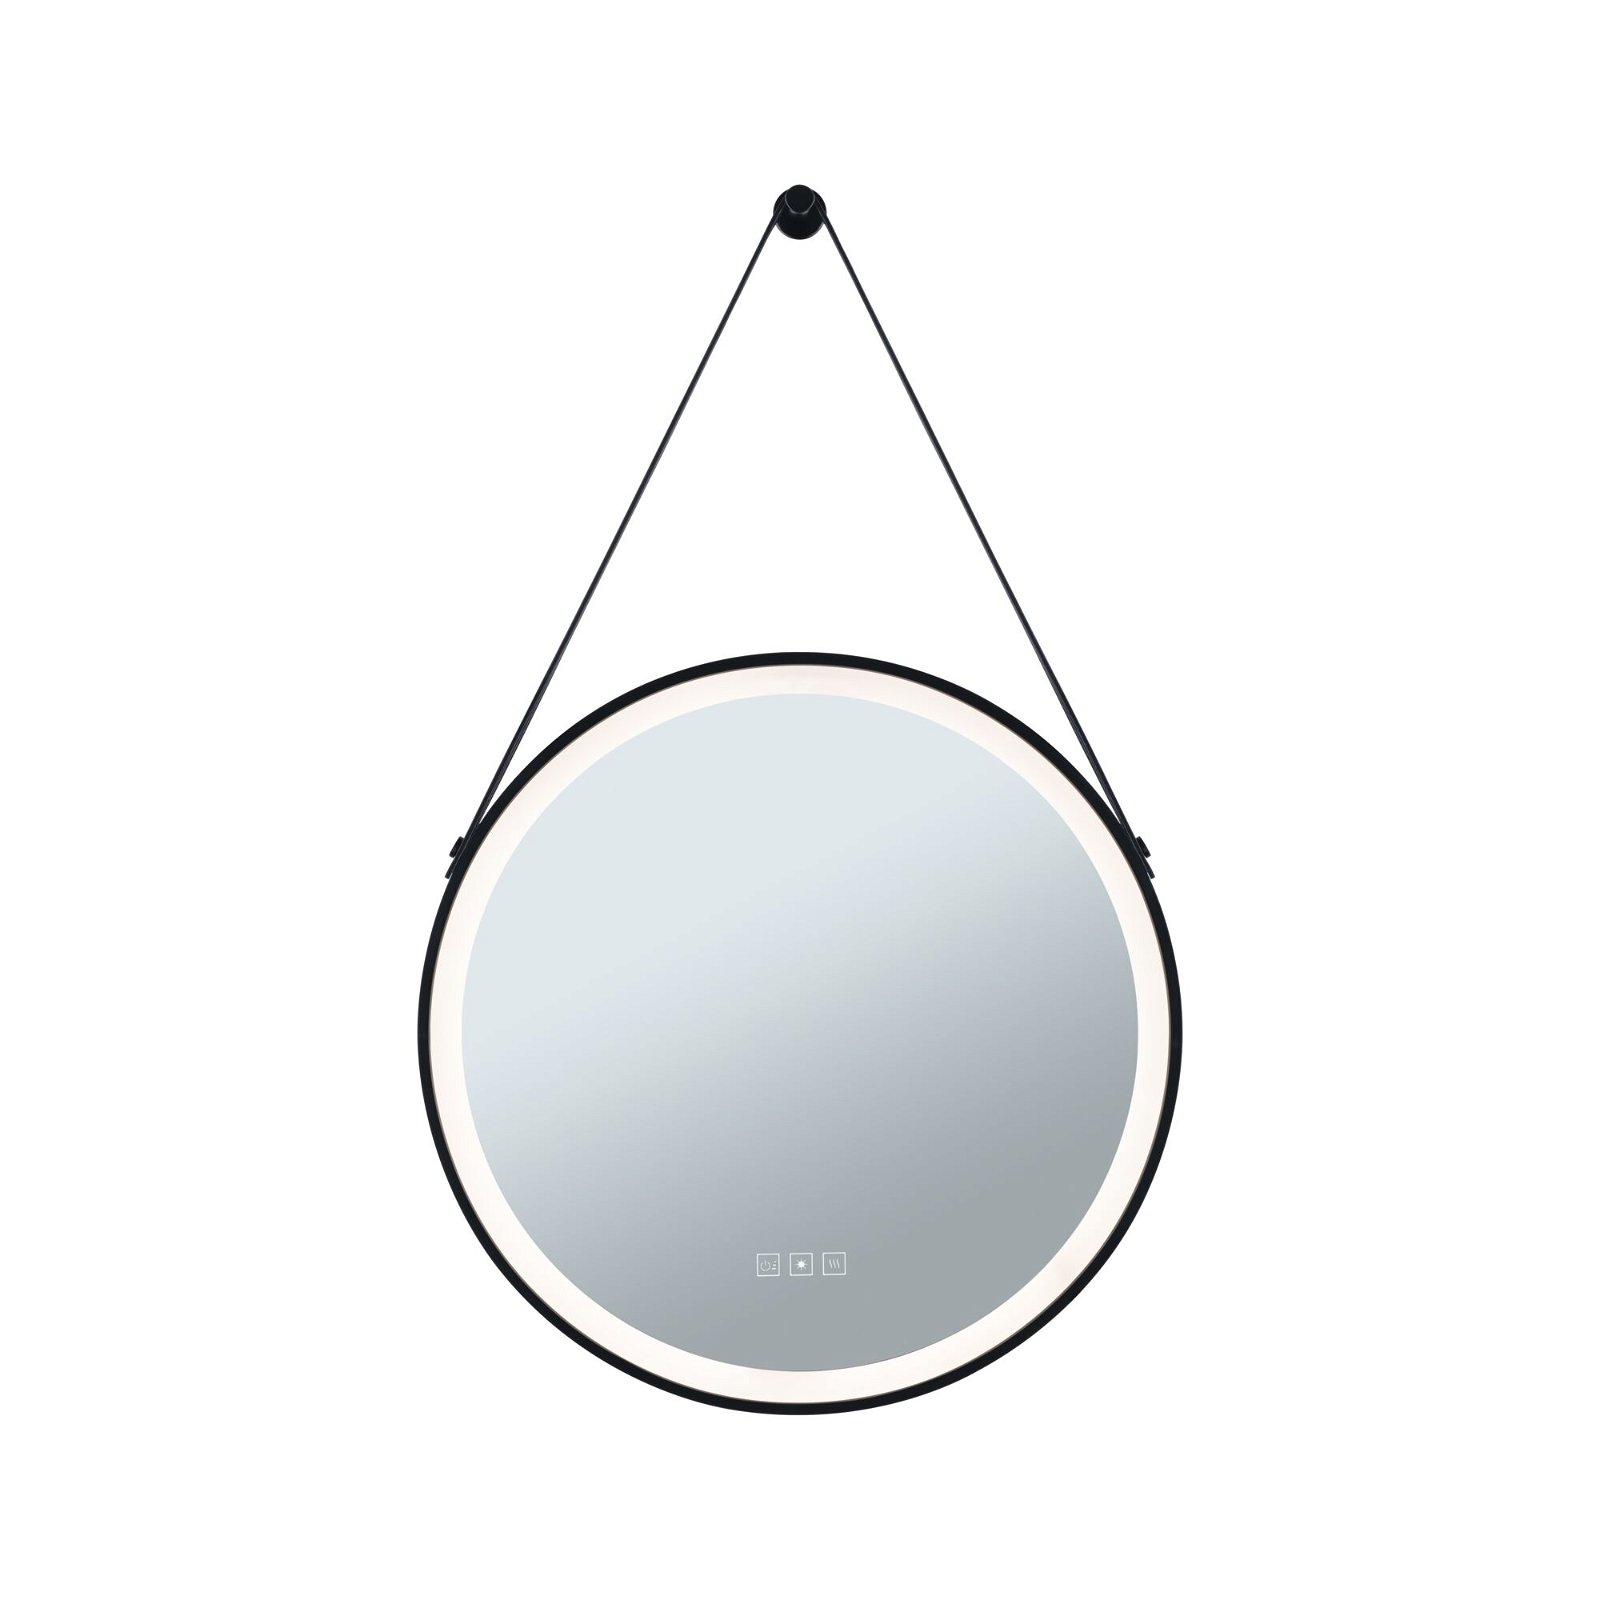 LED-verlichte spiegel Mirra IP44 White Switch 750lm 230V 11,5W dimbaar Zwart/Spiegel